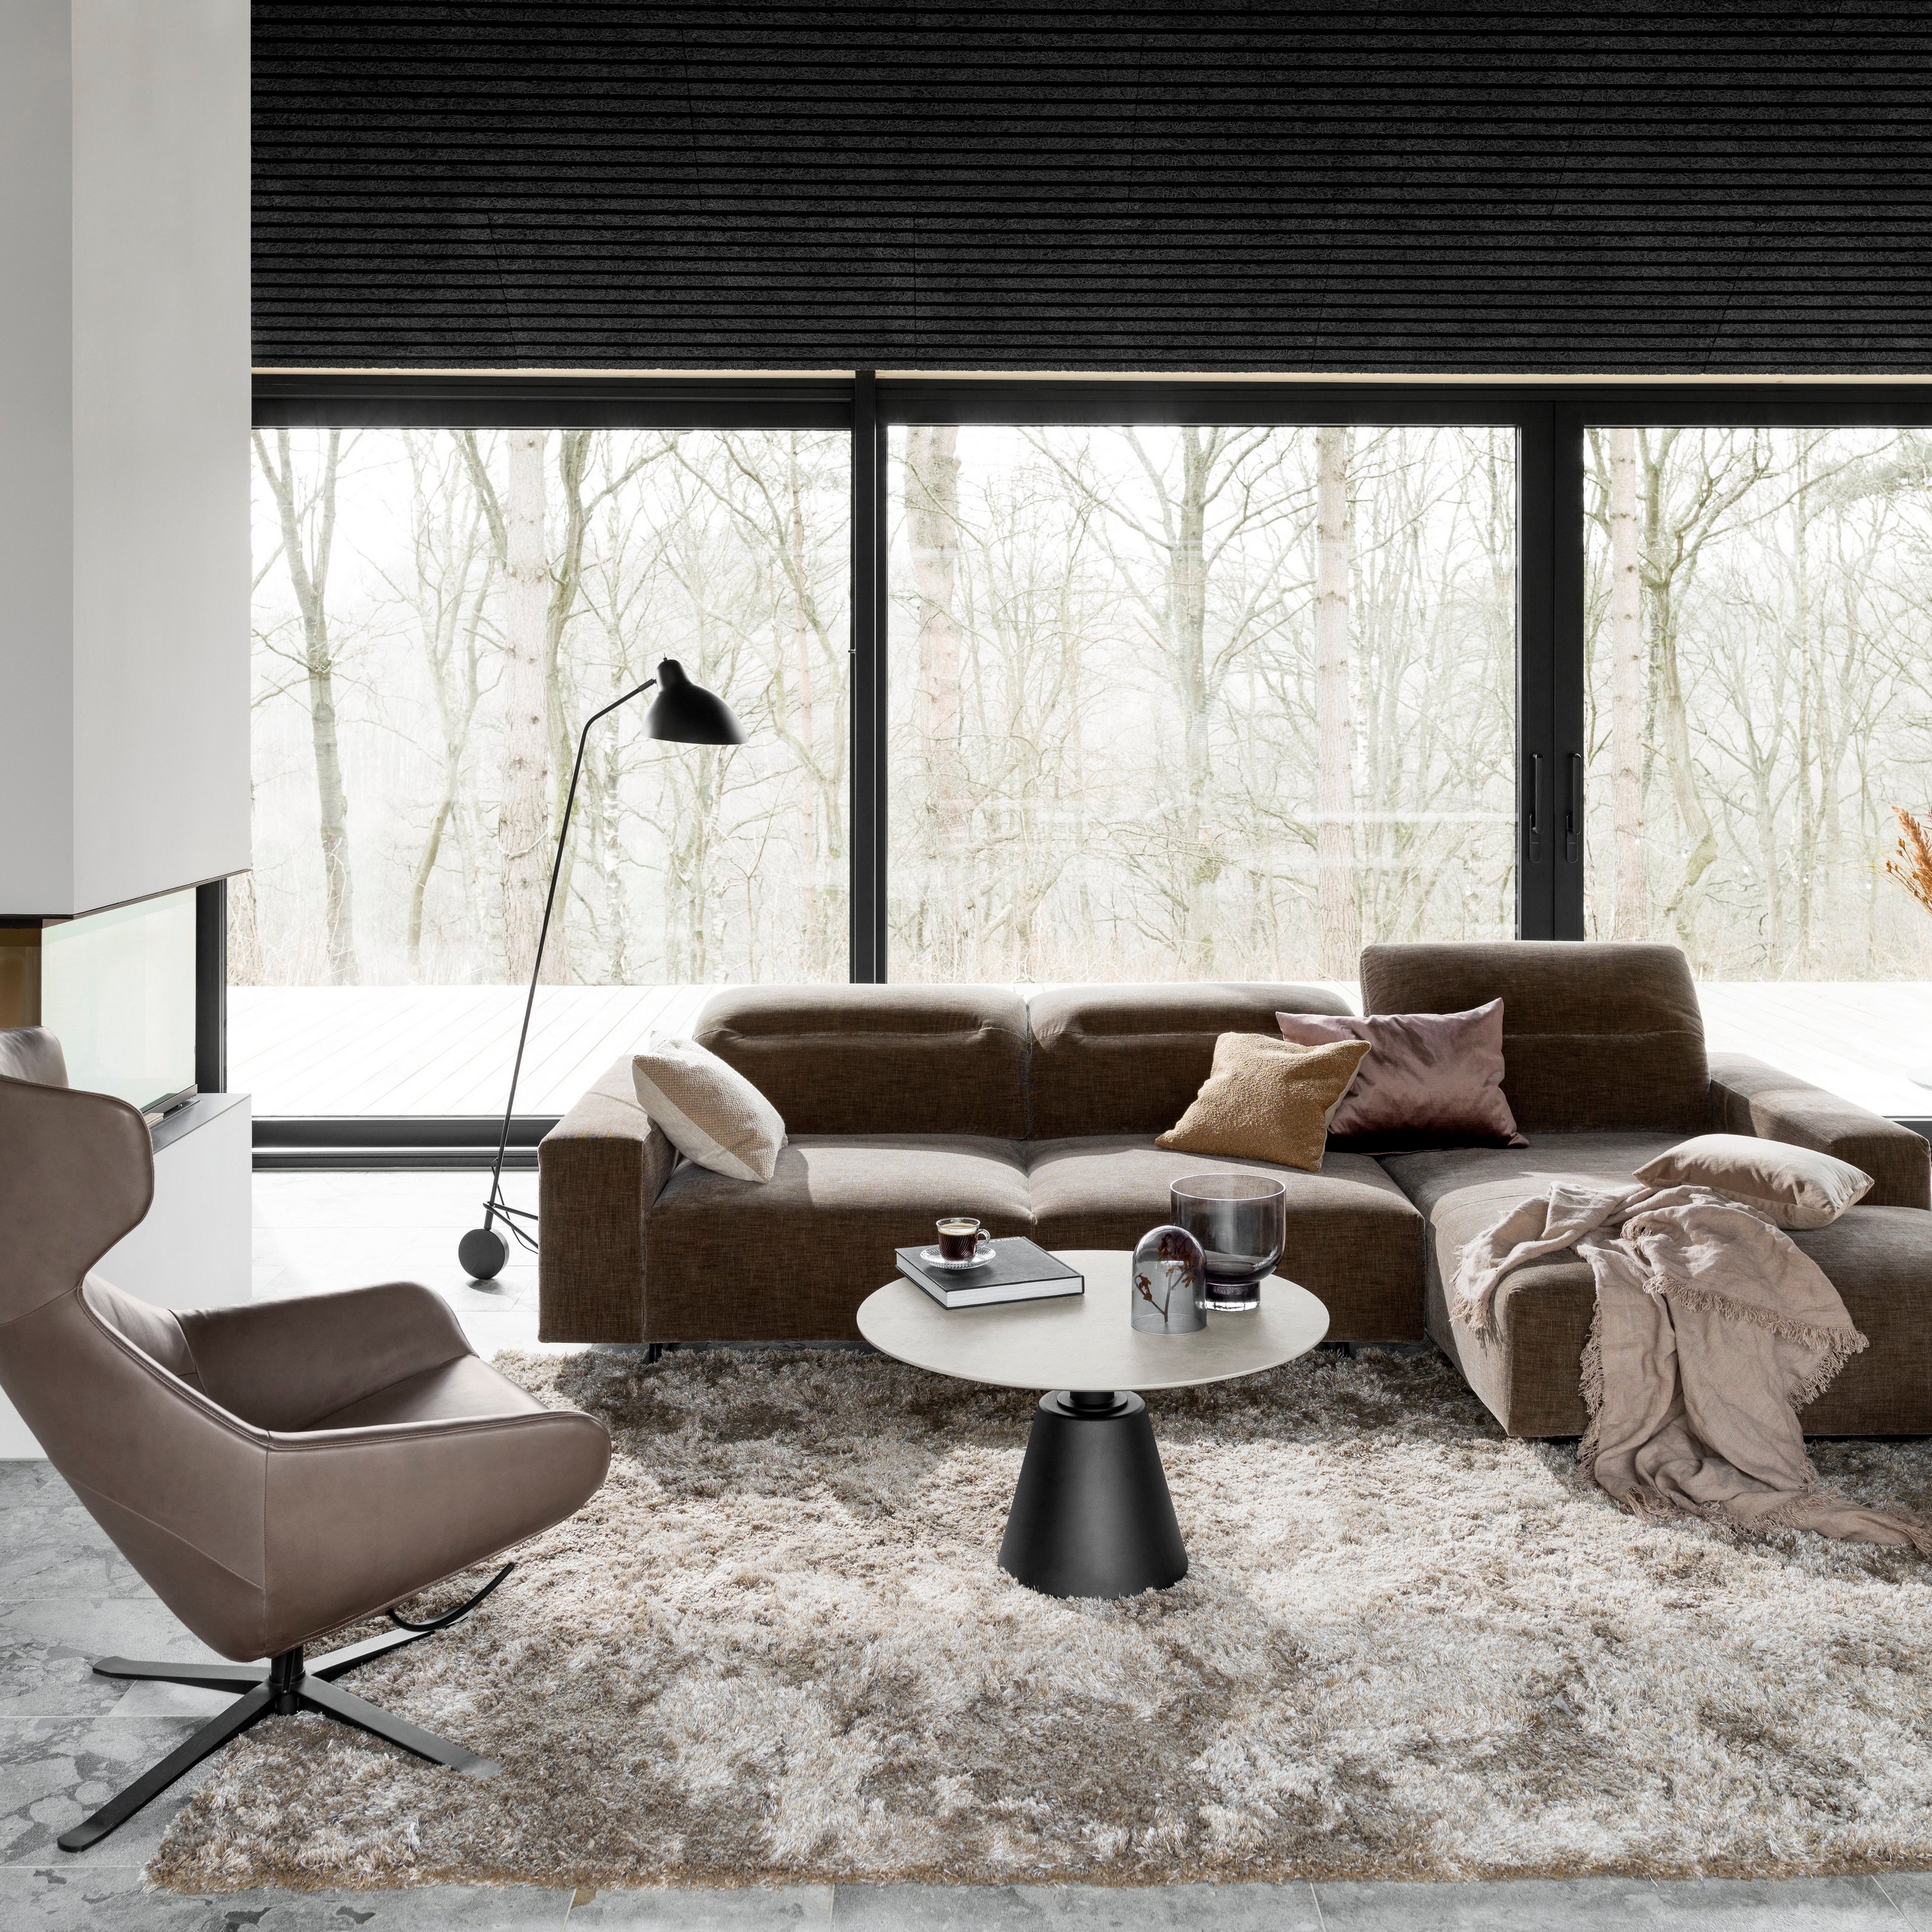 Modernes Wohnzimmer mit braunem Modulsofa, grauem Teppich und schwarzer Stehlampe am Fenster.